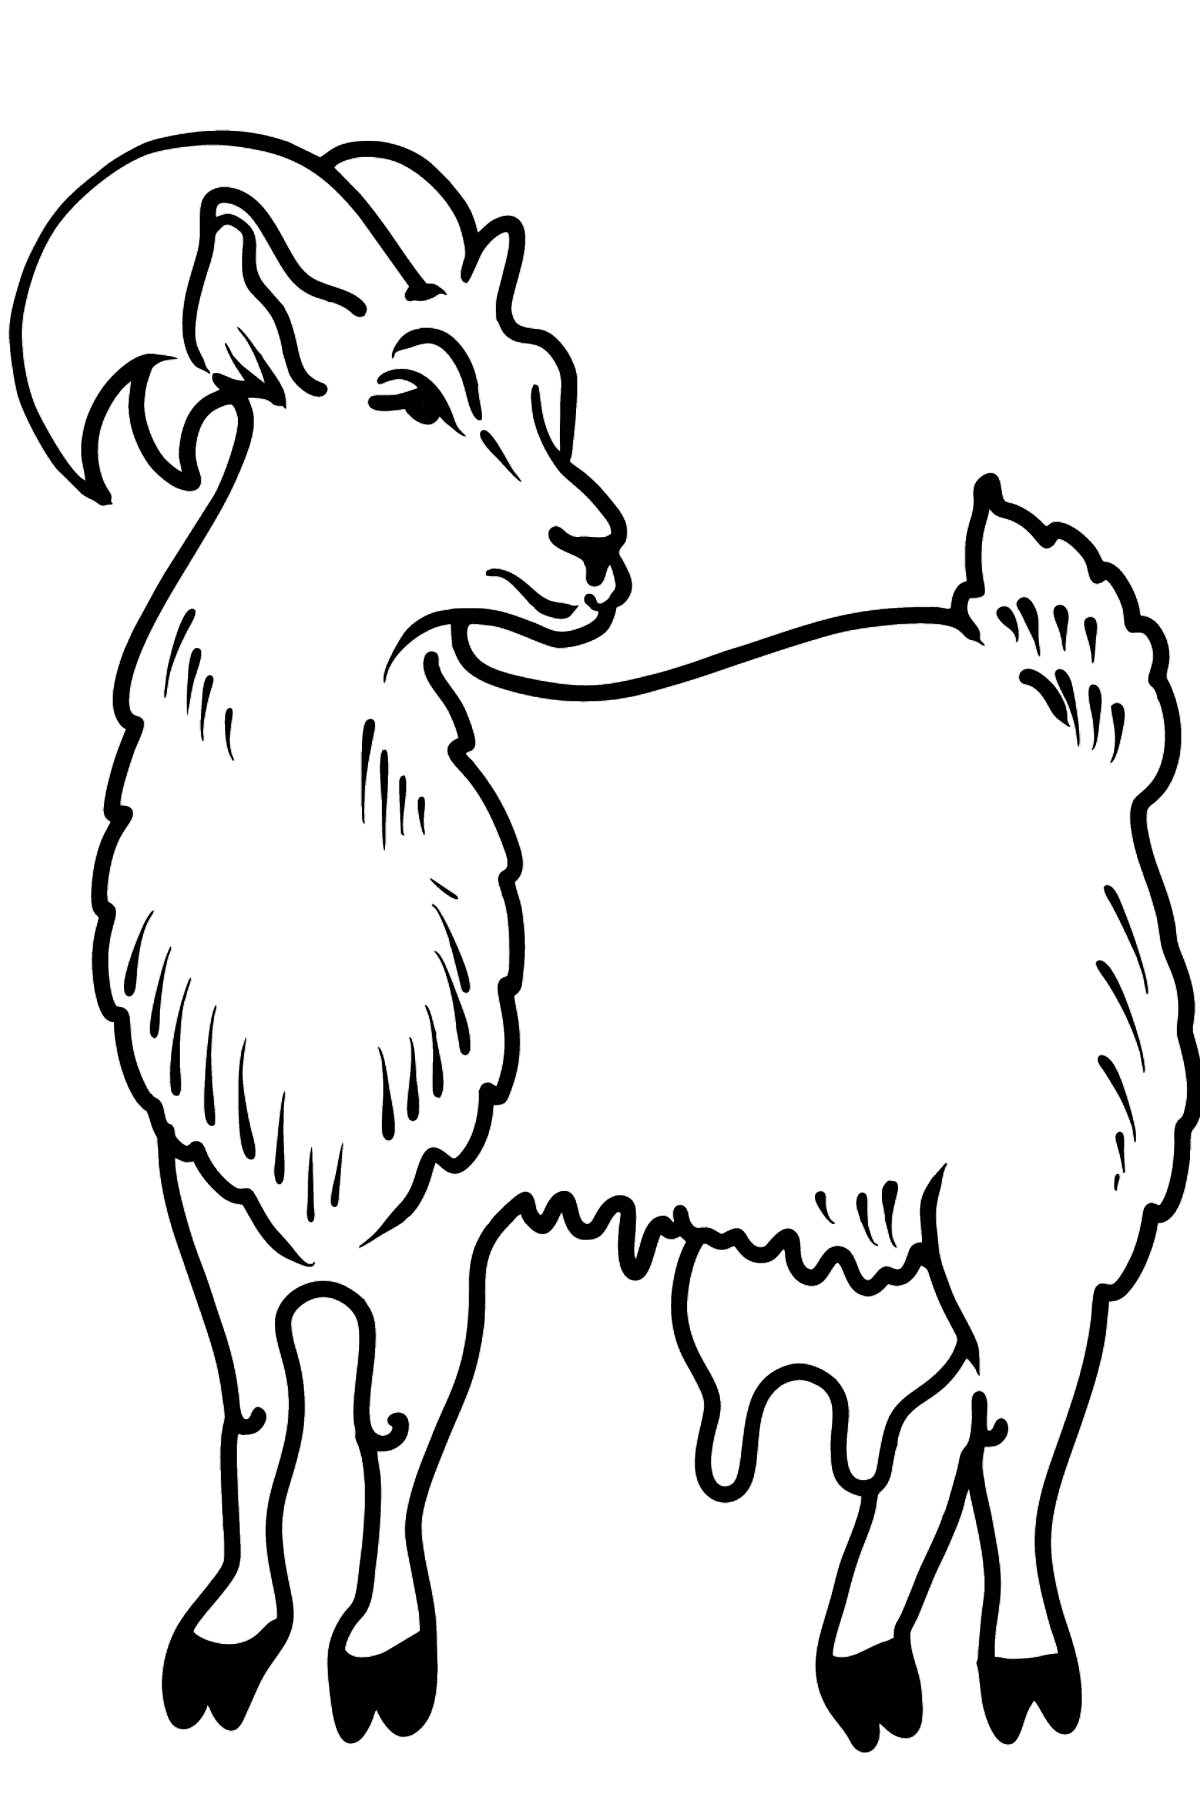 Dibujo de cabra para colorear - Dibujos para Colorear para Niños